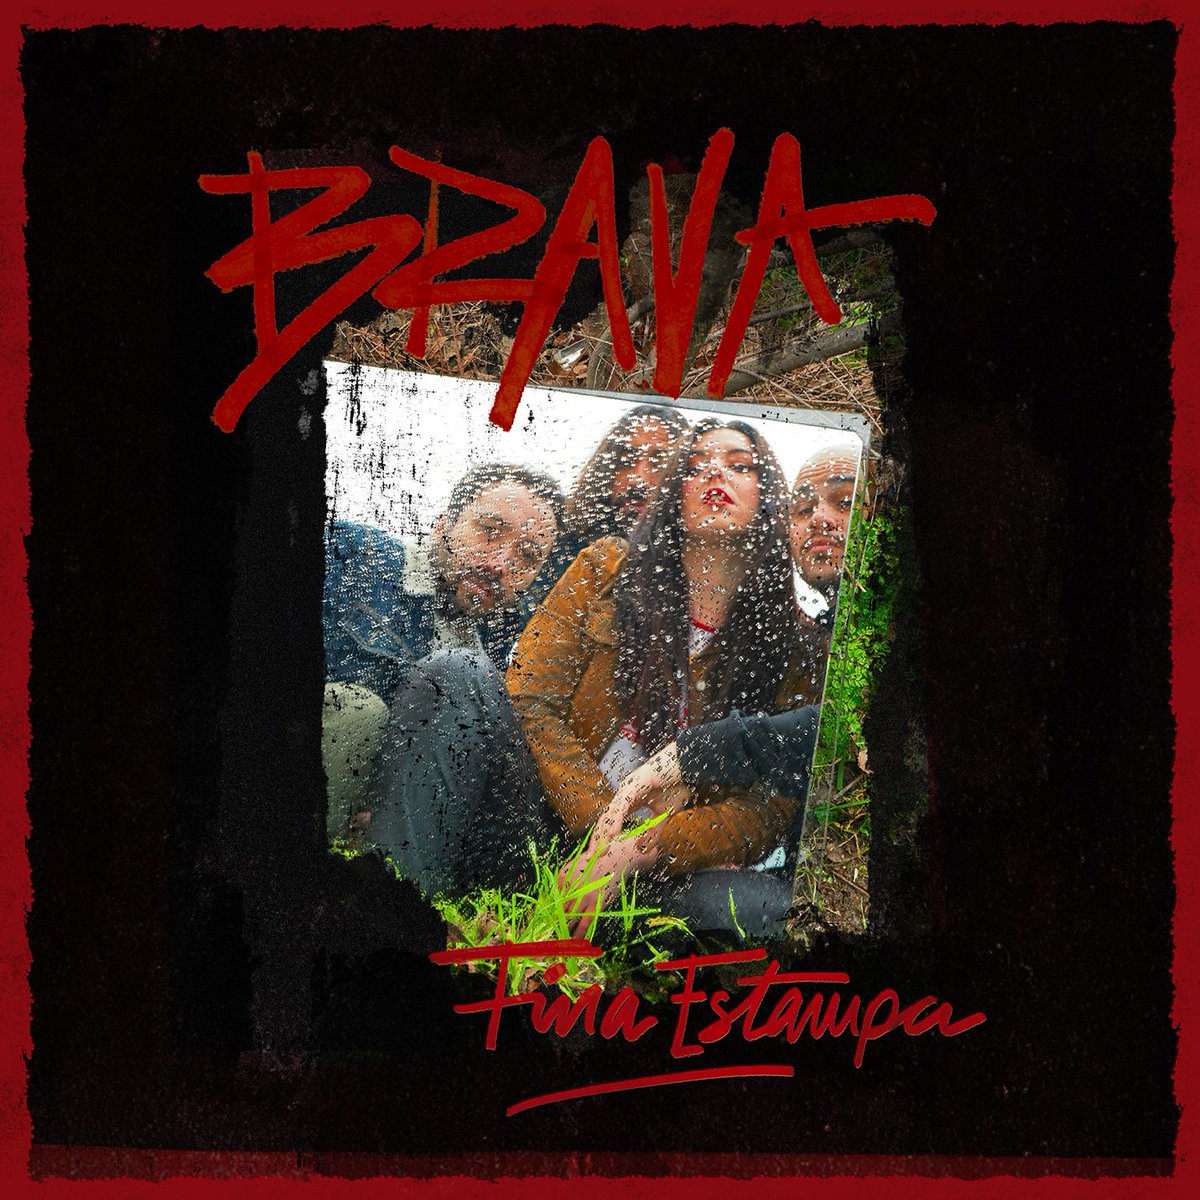 Martes con nuevo disco de @brava_banda repleto de actitud y rock de barrio. 'Amiga', la penúltima canción y la más tranquila, quizá mi favorita y un camino a explorar.